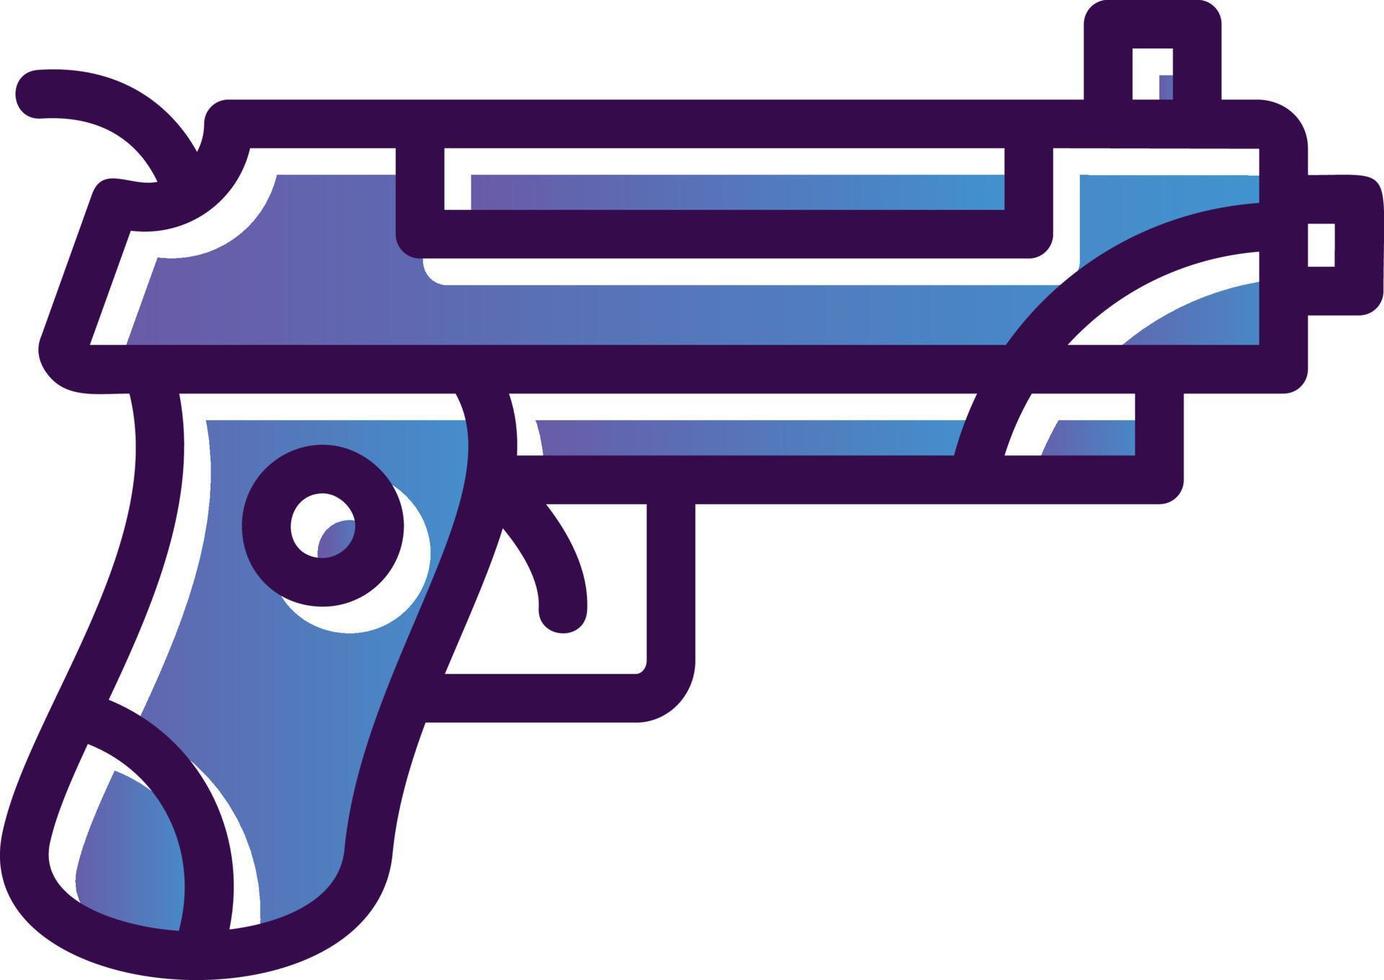 Guns Vector Icon Design